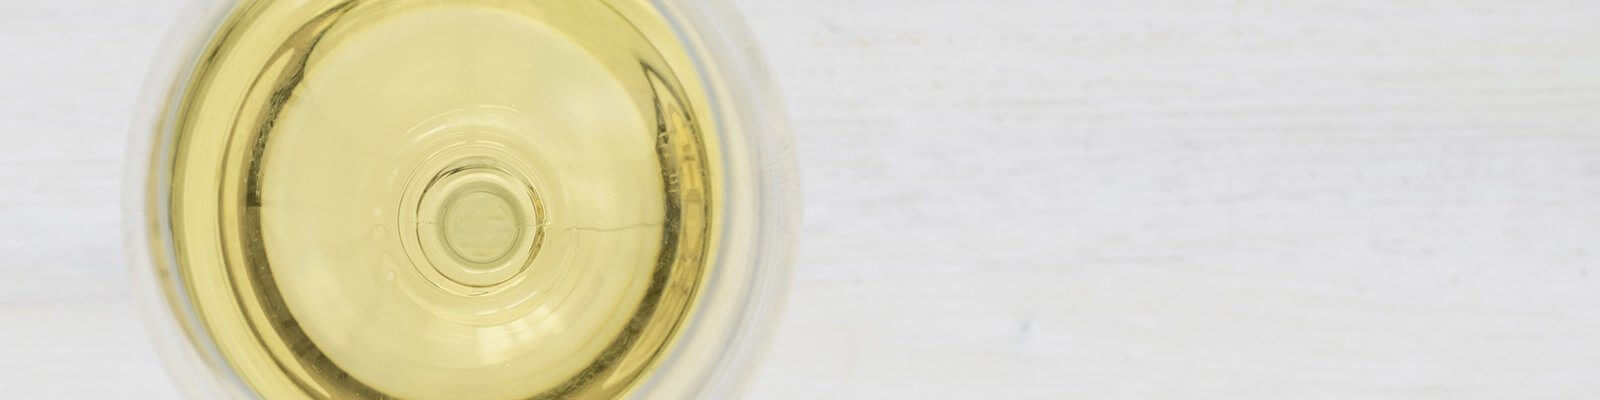 Unsere Kollektion von Weißweinen - Finden Sie diese bei Onshore Cellars Ihrem Yacht-Weinlieferanten